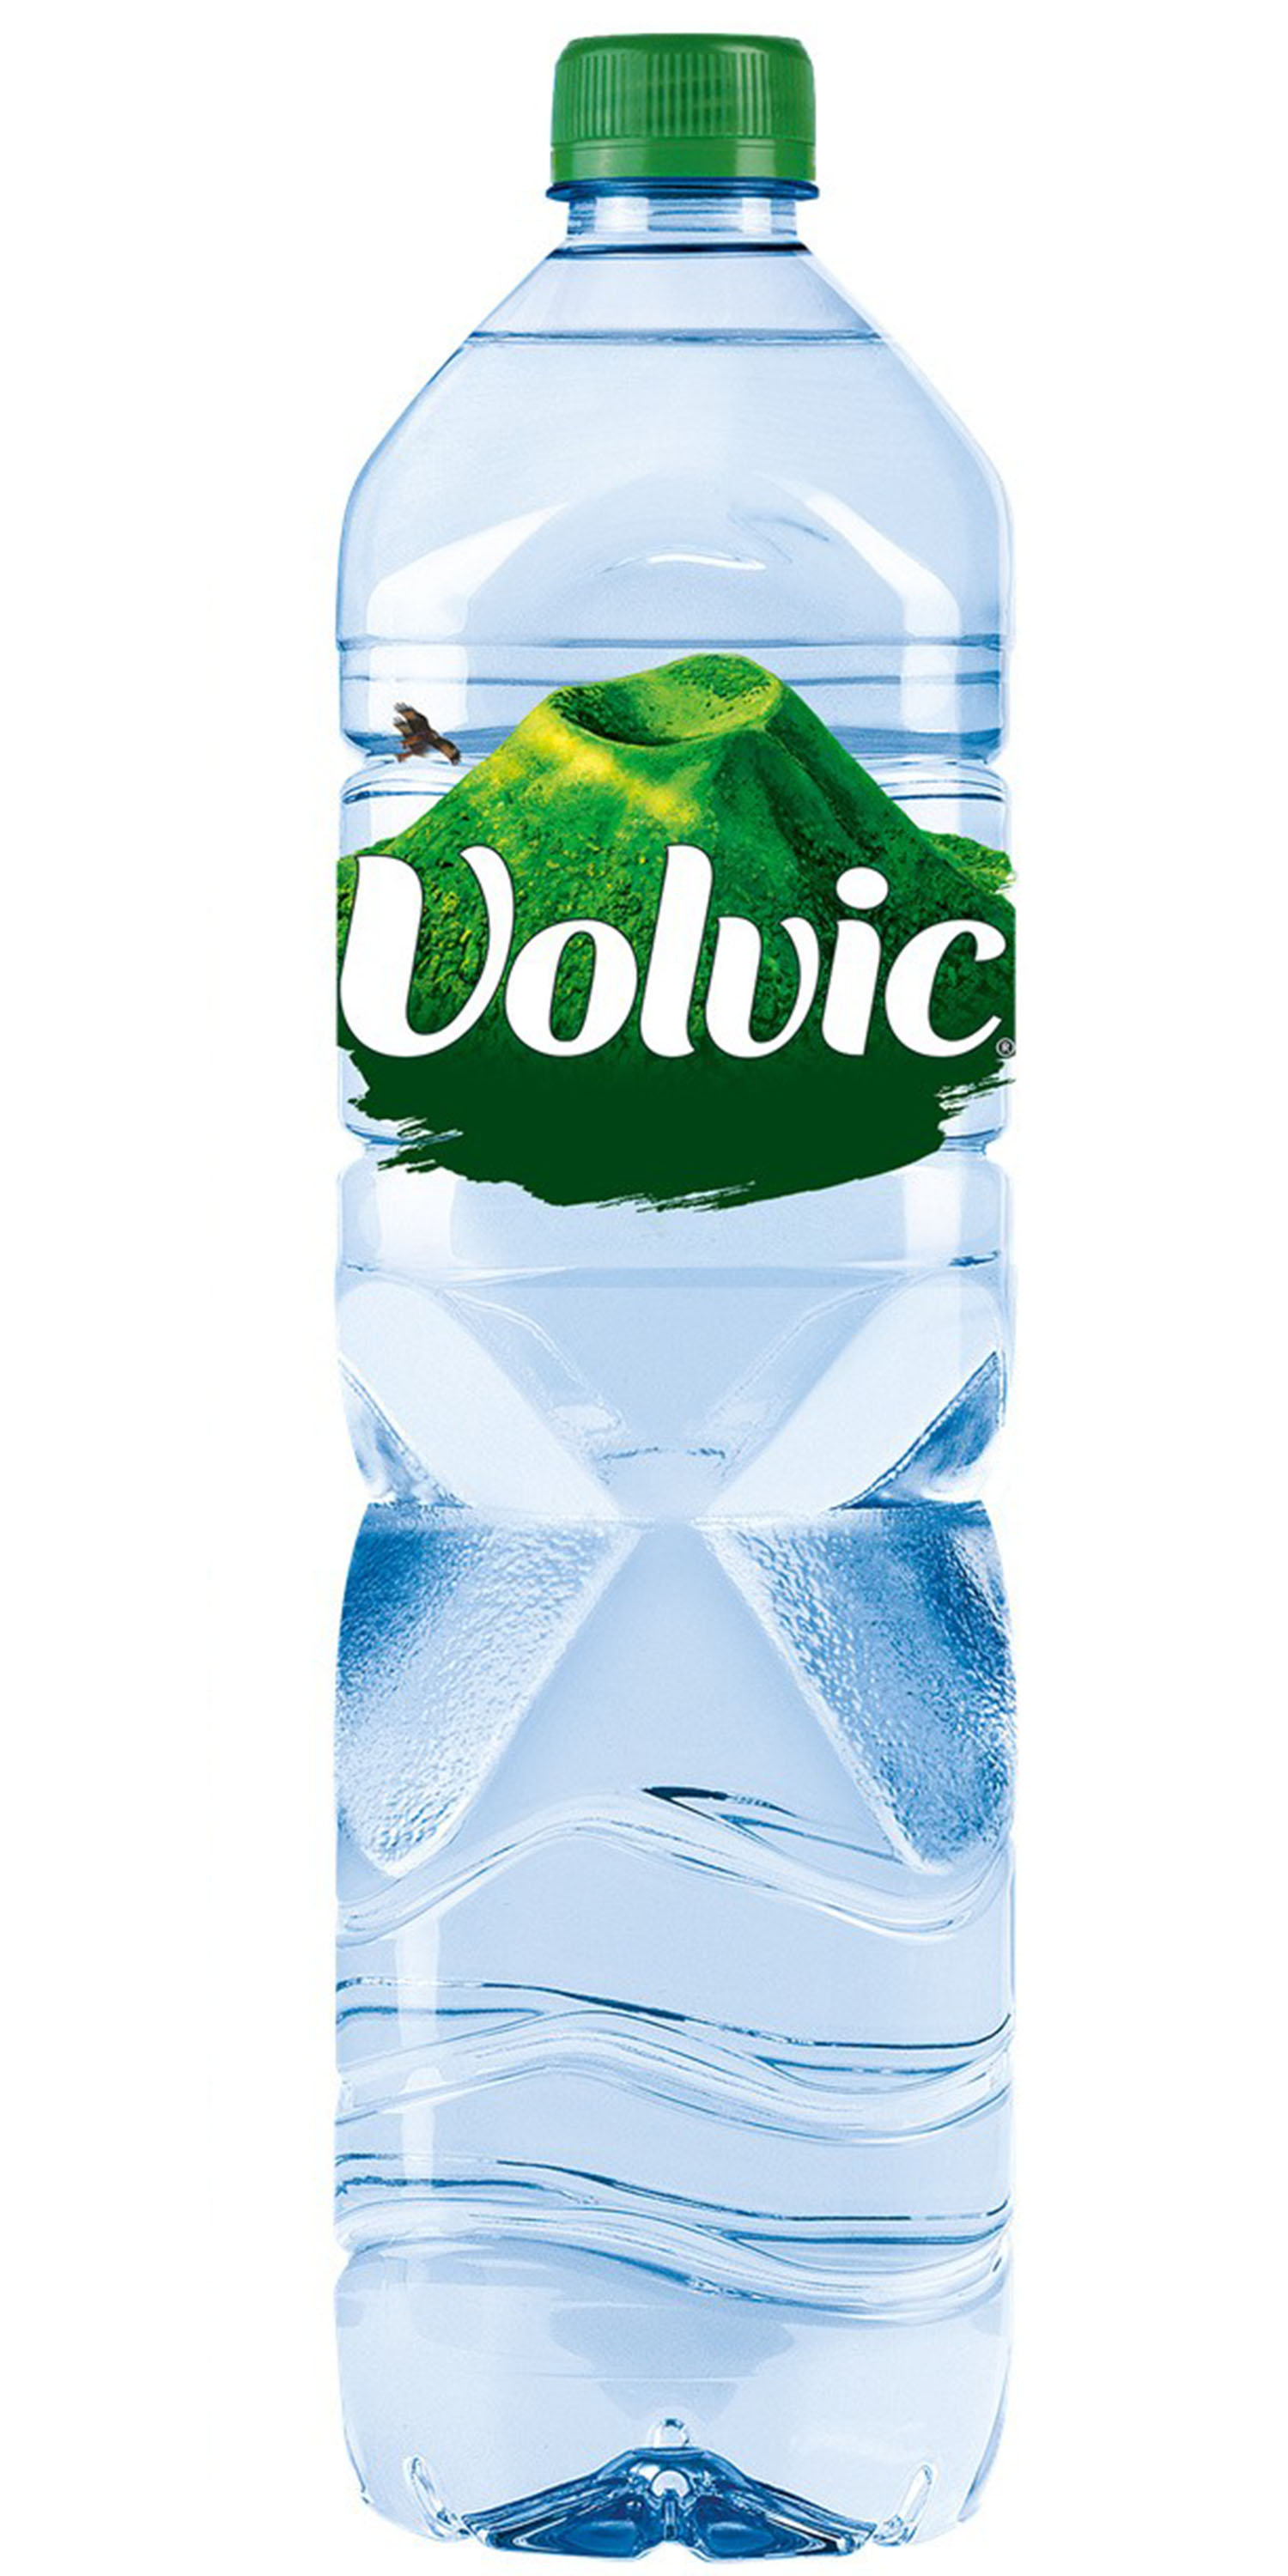 VOLVIC Bouteille plastique d'eau nature de 50 cl